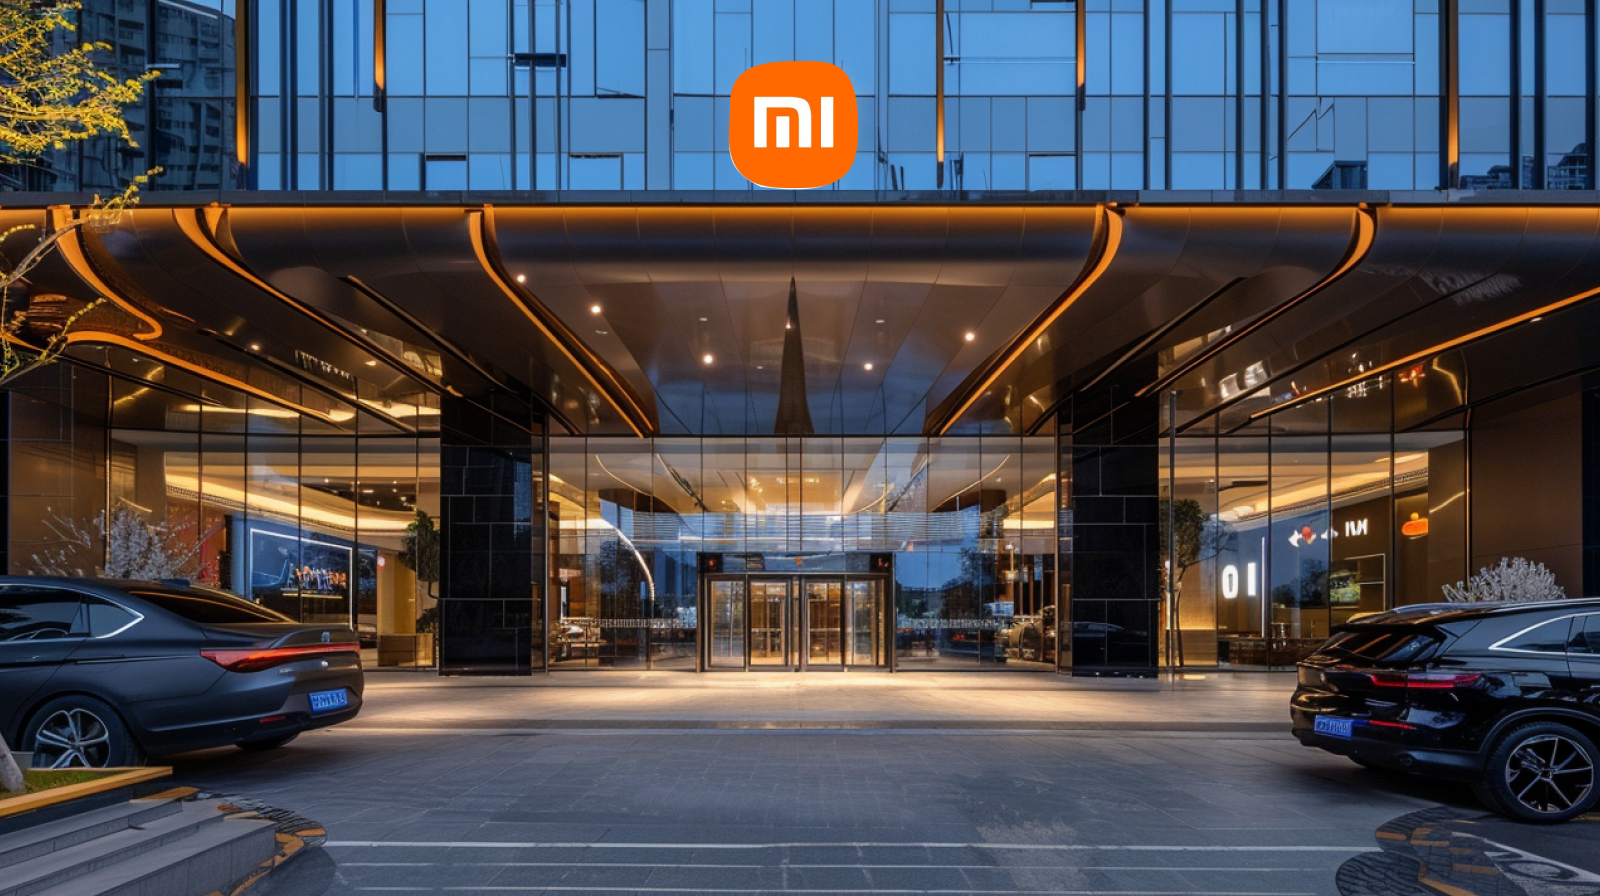 der Eingang eines modernen Gebäudes mit dem Xiaomi Logo über der Glasfront, umgeben von geparkten Autos.